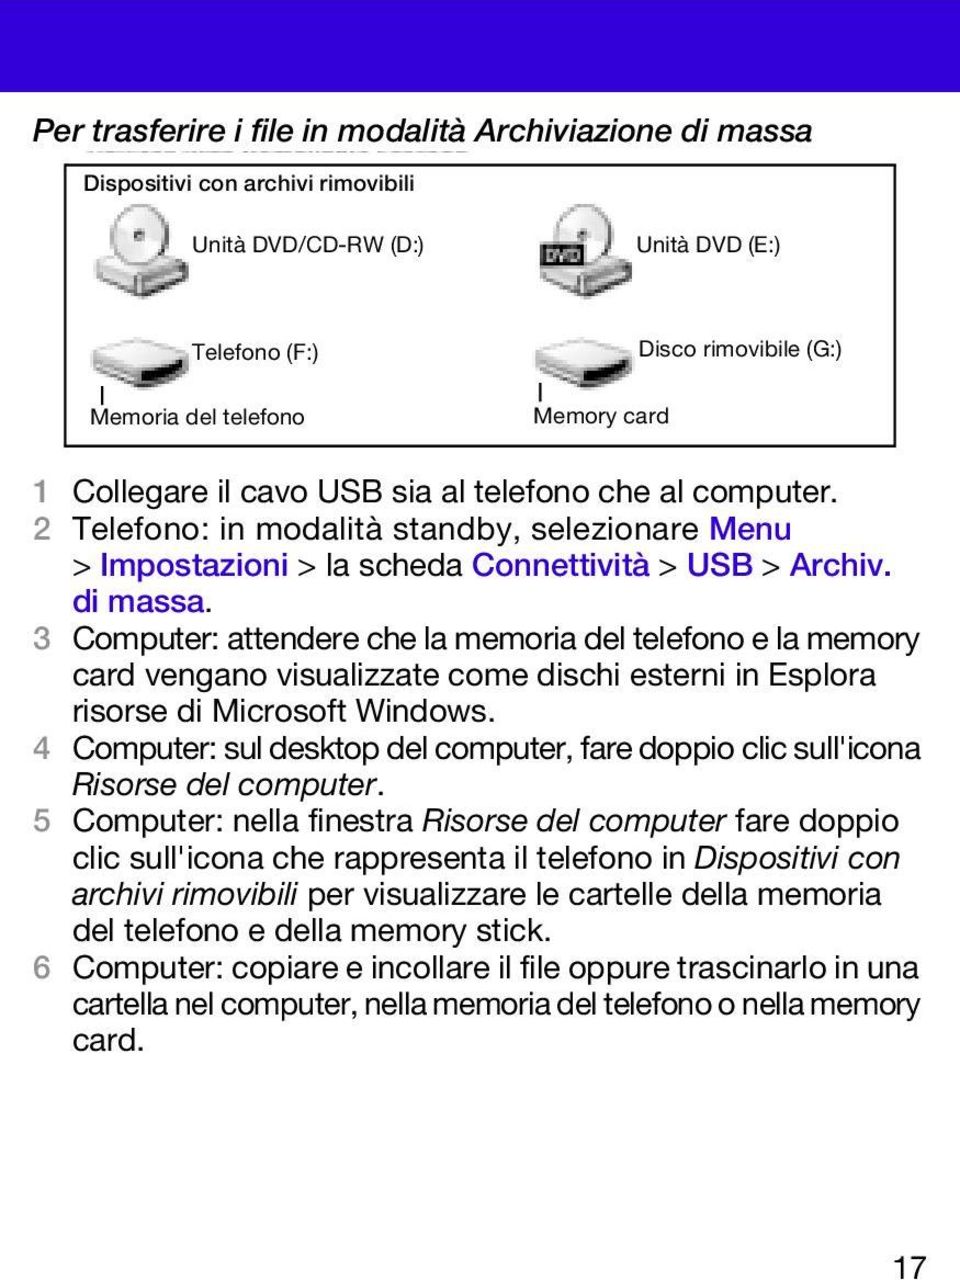 3 Computer: attendere che la memoria del telefono e la memory card vengano visualizzate come dischi esterni in Esplora risorse di Microsoft Windows.